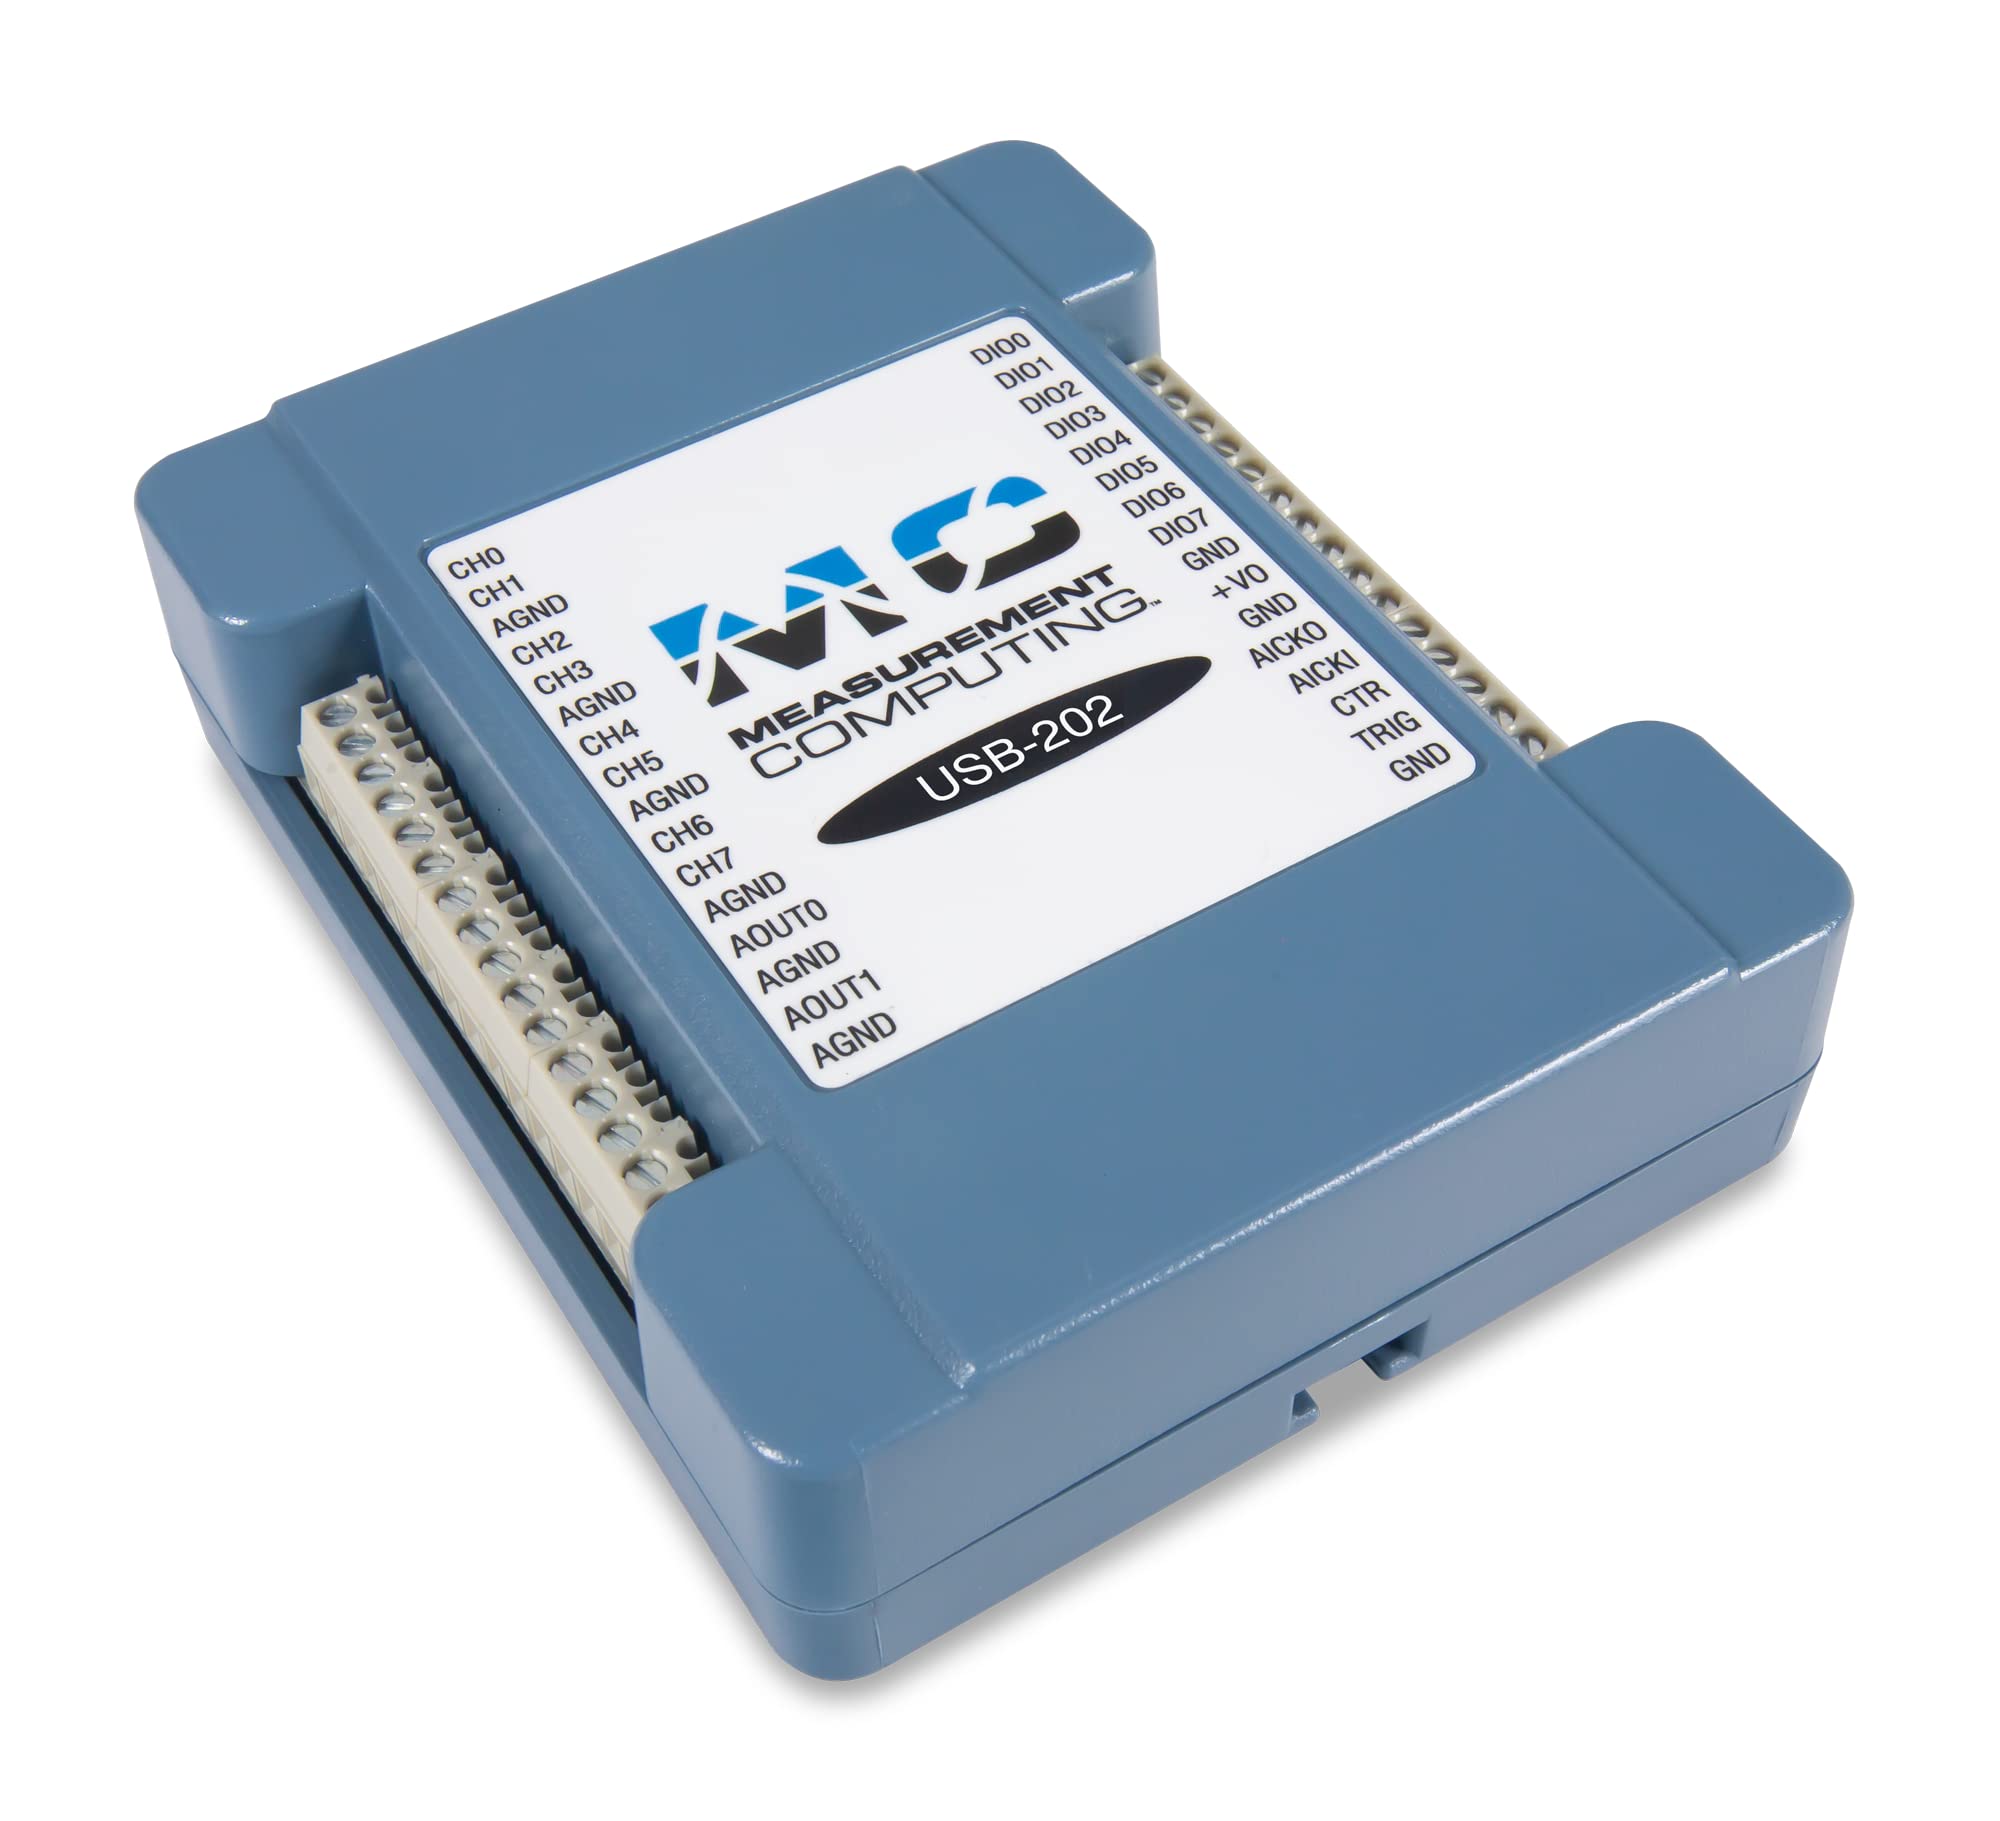 MCC USB-201-12-Bit Low-Cost Messmodul für Standard-Spannungssignale